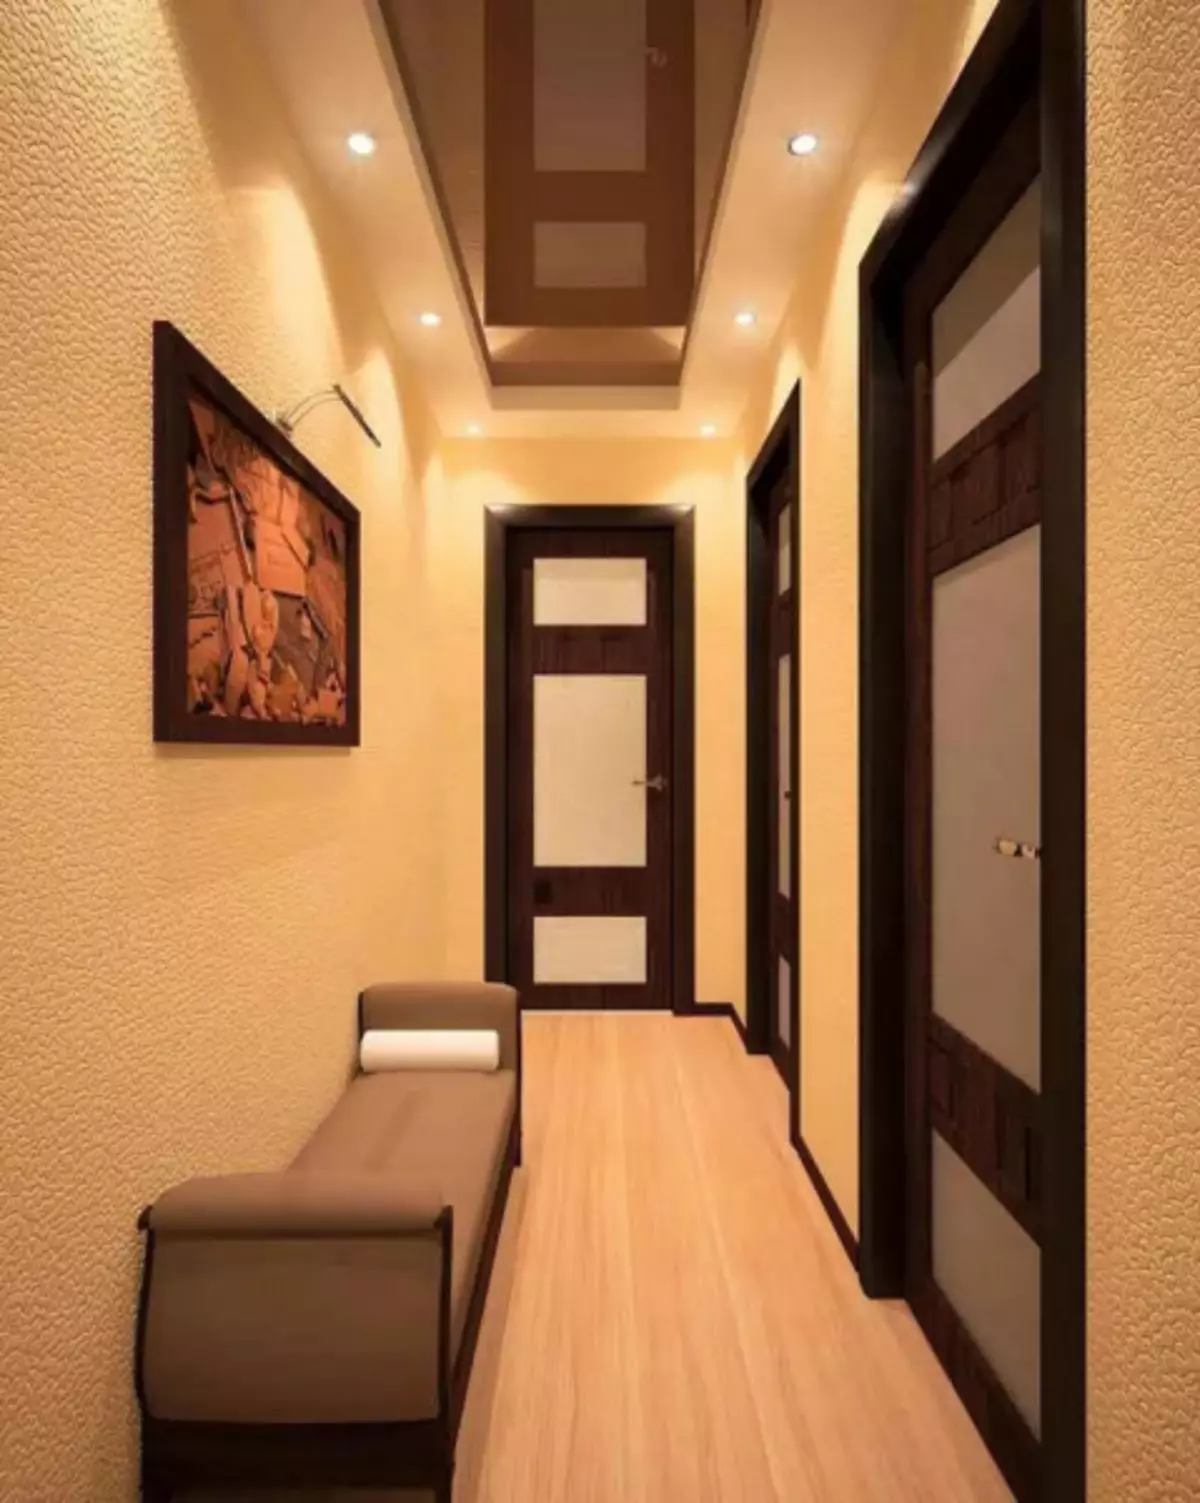 Väike koridori disain - stiilne sisemise loomise saladused (35 fotot)